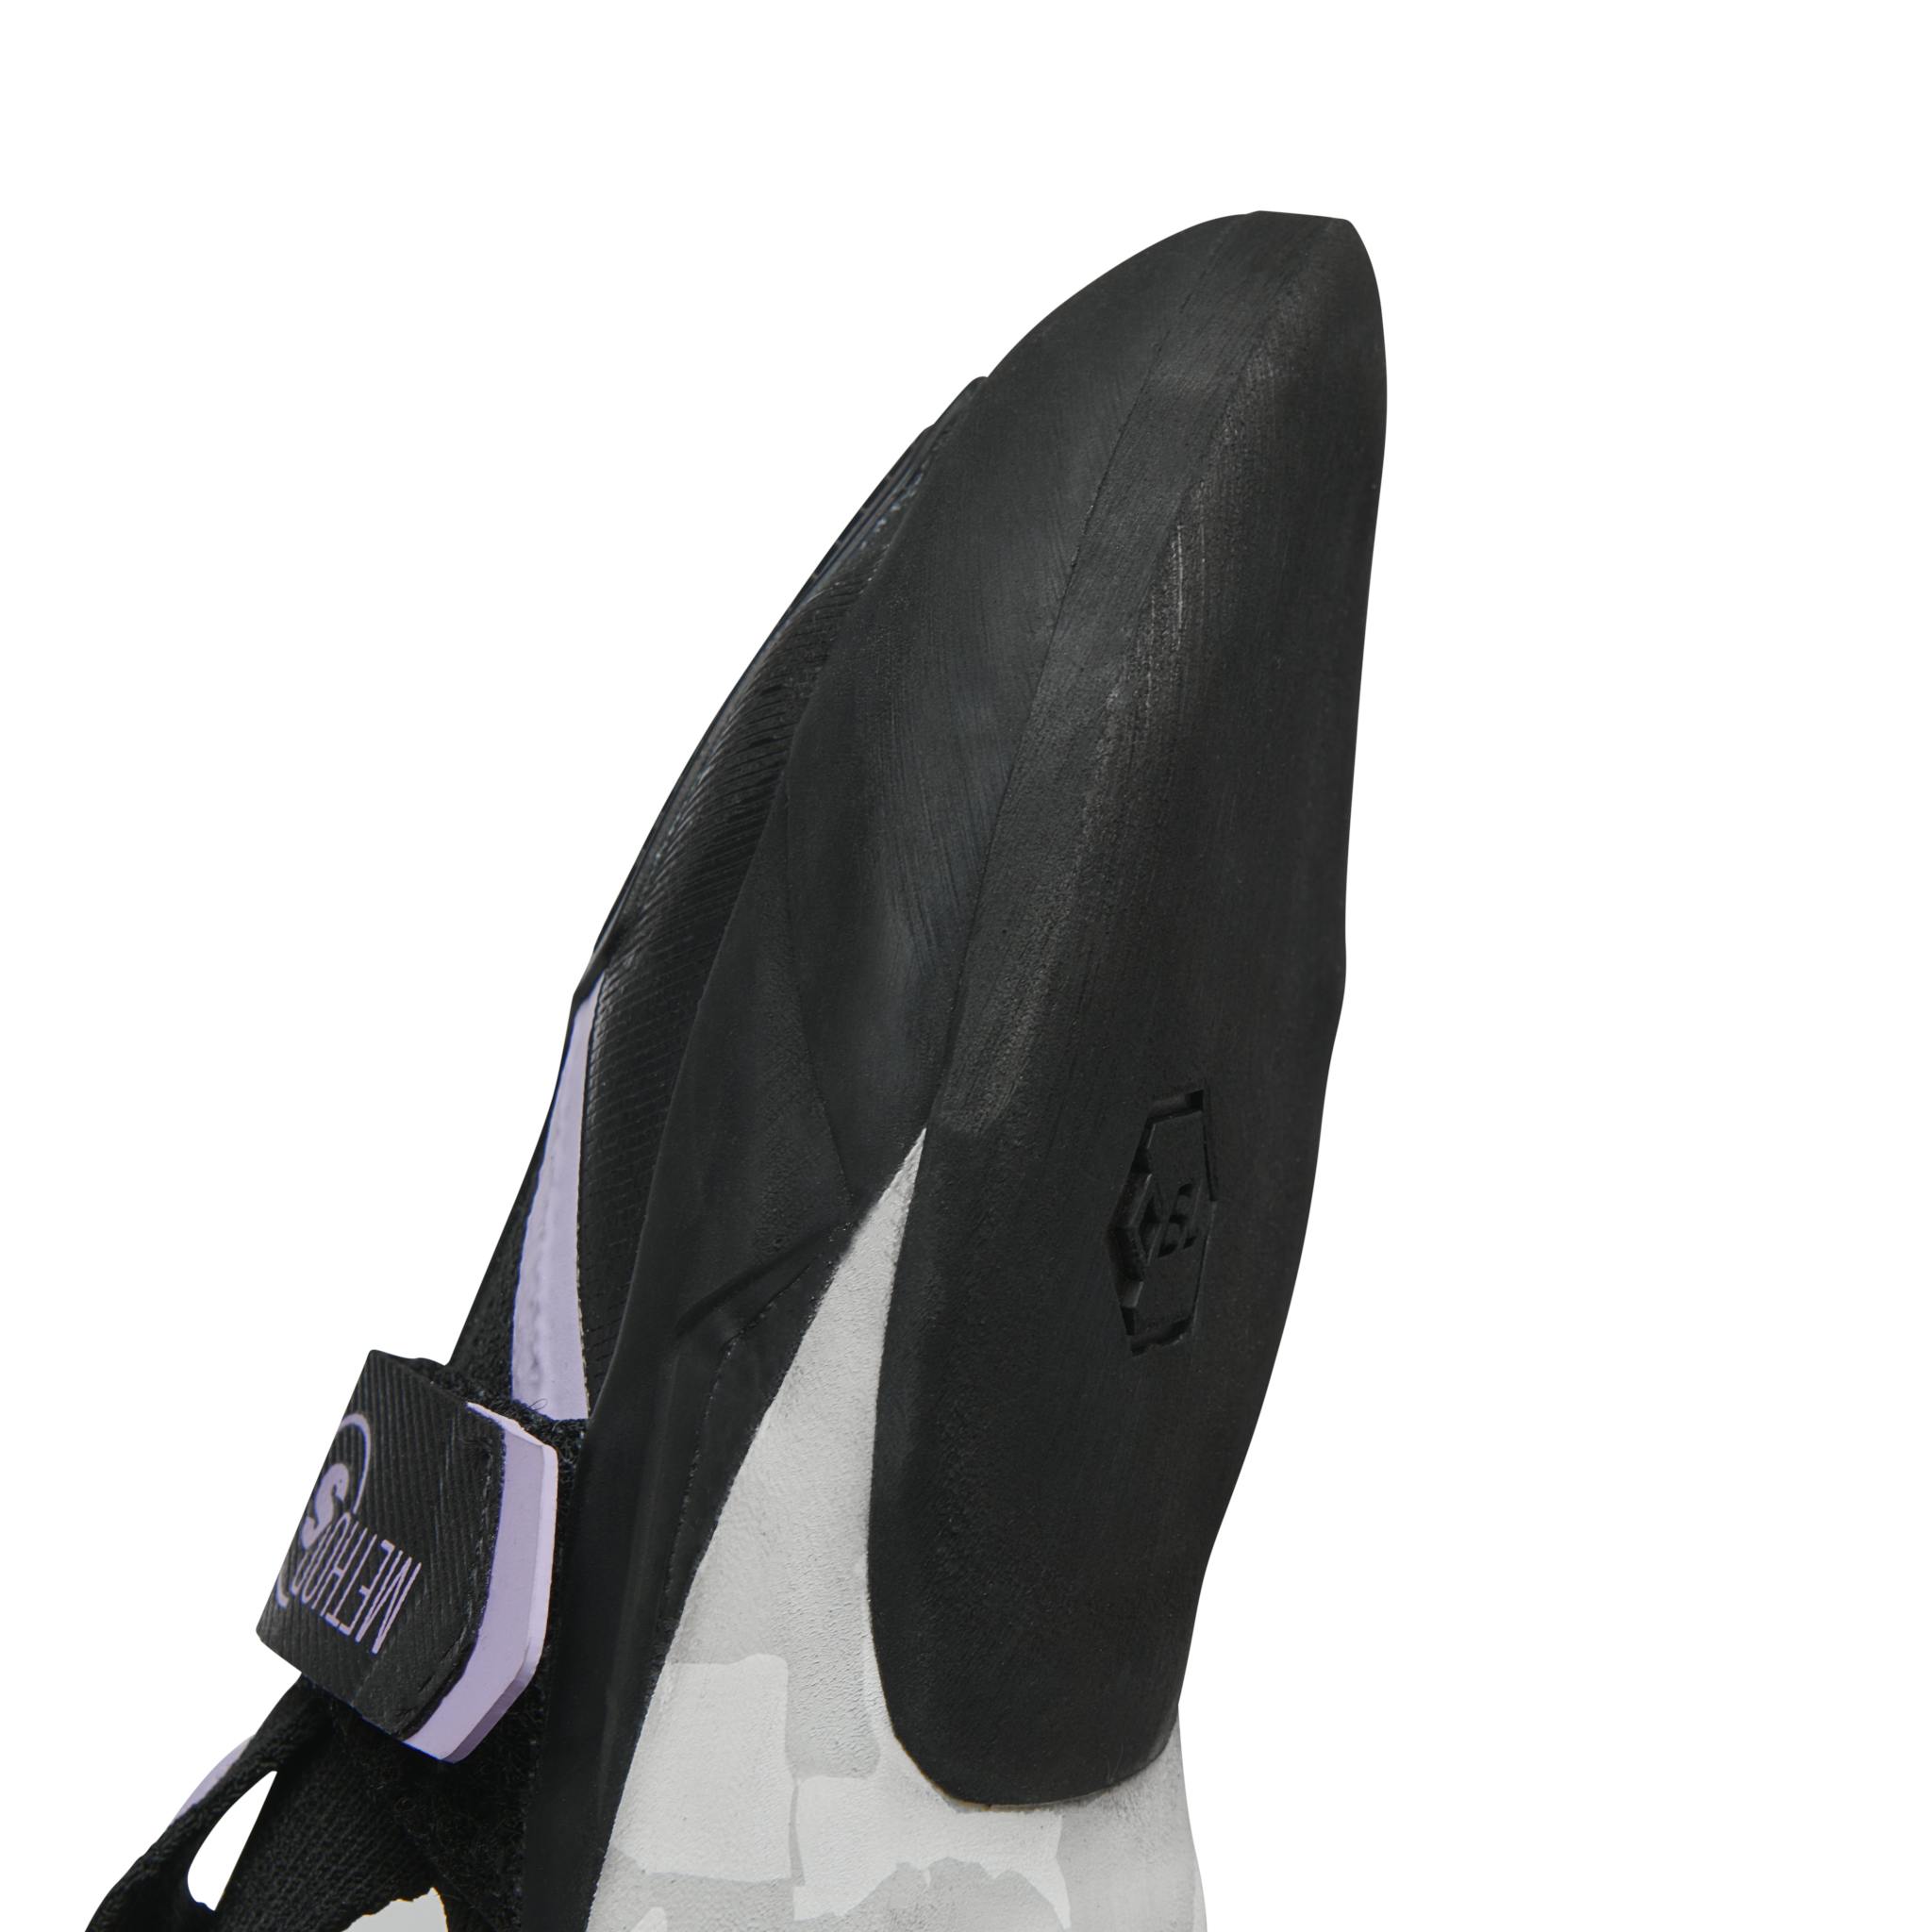 Evolv Phantom LV Climbing Shoes - White/Black 8